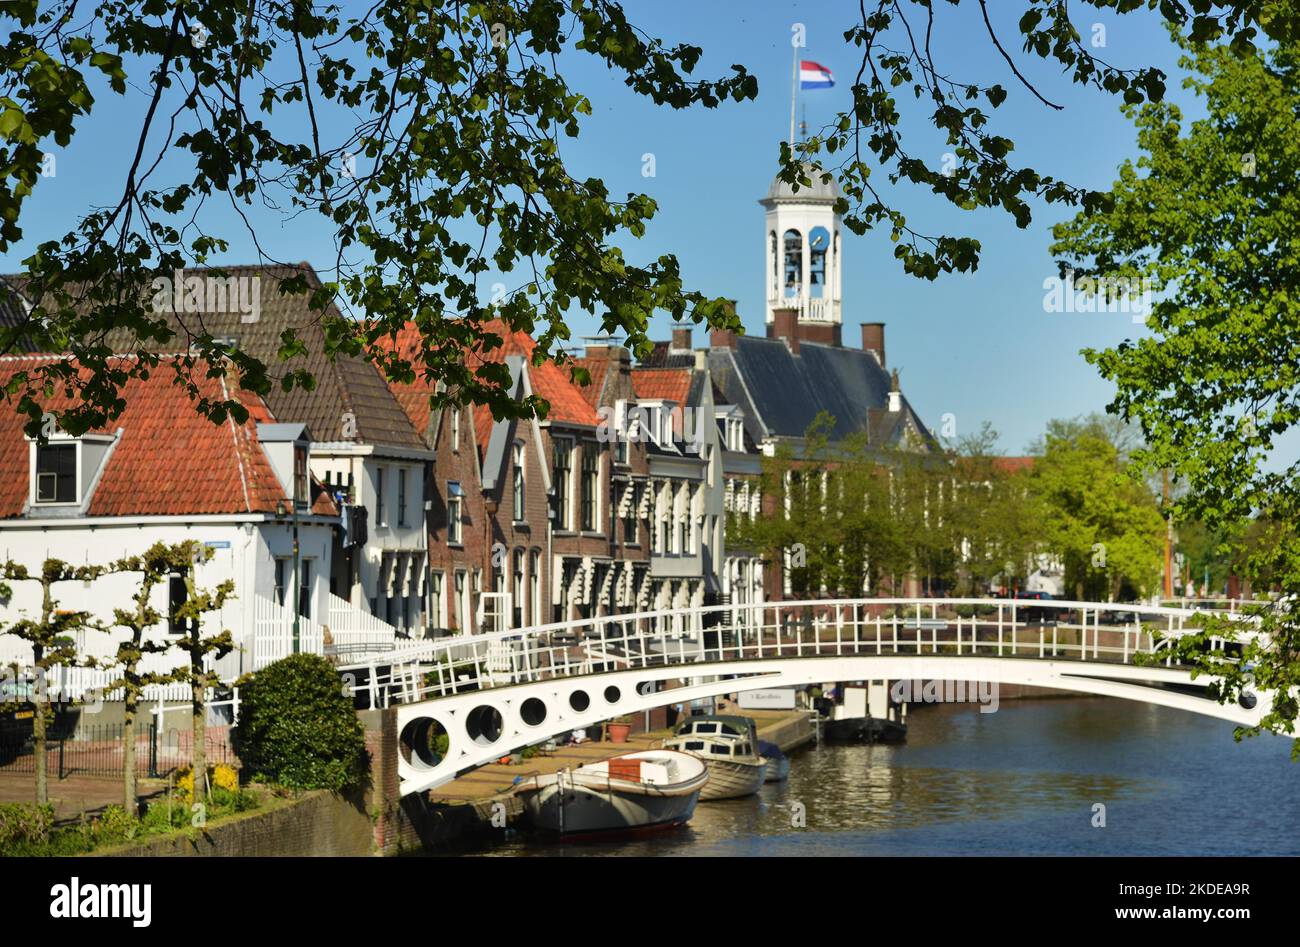 La città olandese di Friesland è stata eletta capitale europea della cultura 2018, Cityscapes il 7,5. 2018 a Leeuwarden, NDL, Paesi Bassi Foto Stock